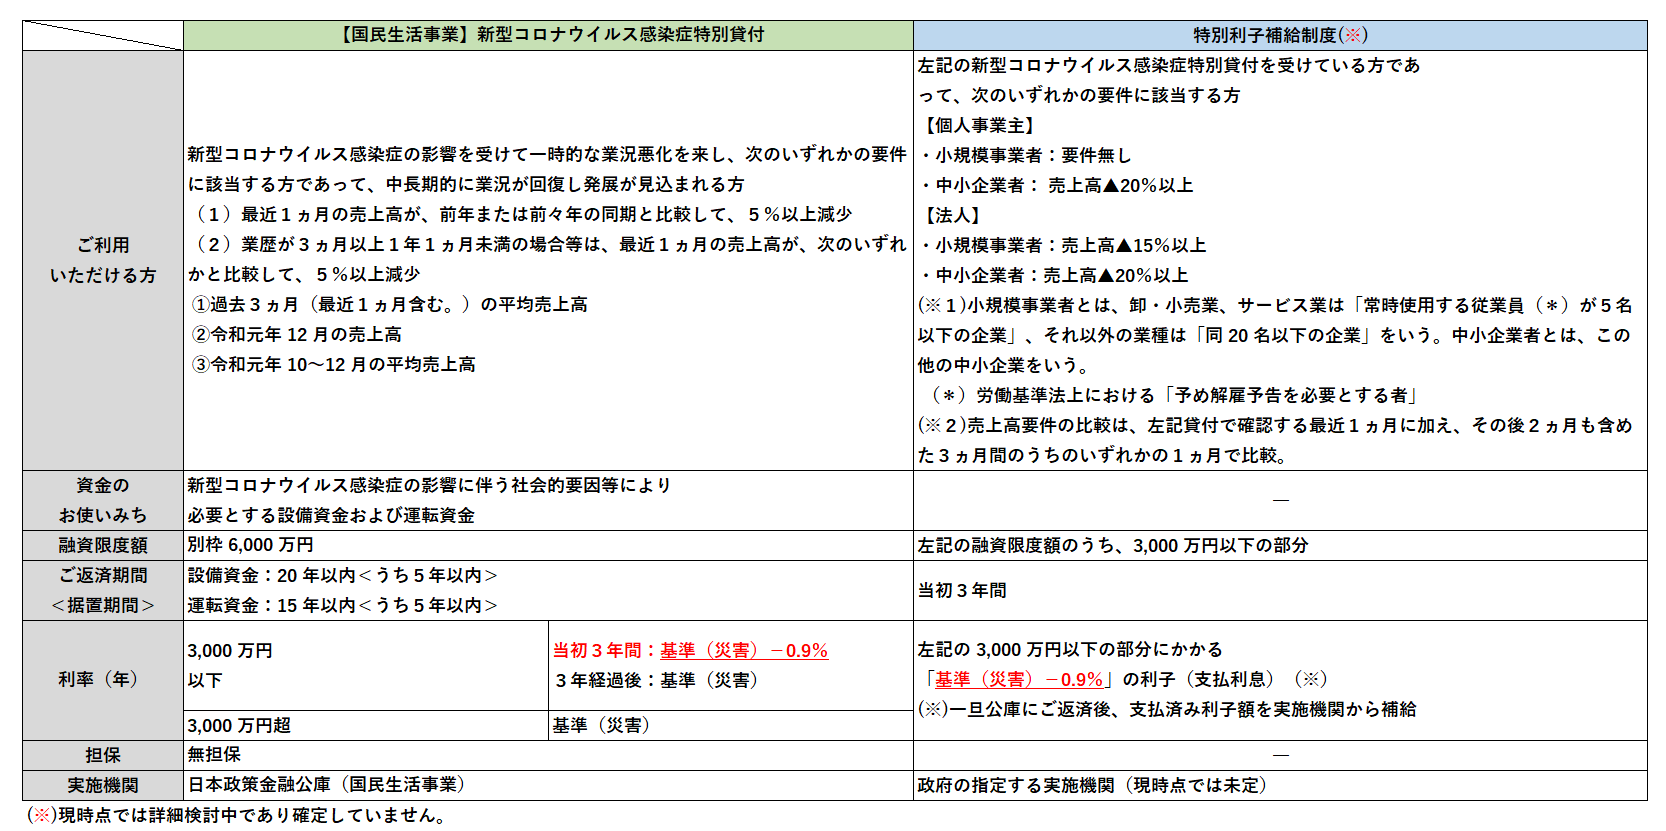 政策 公庫 日本 コロナ 金融